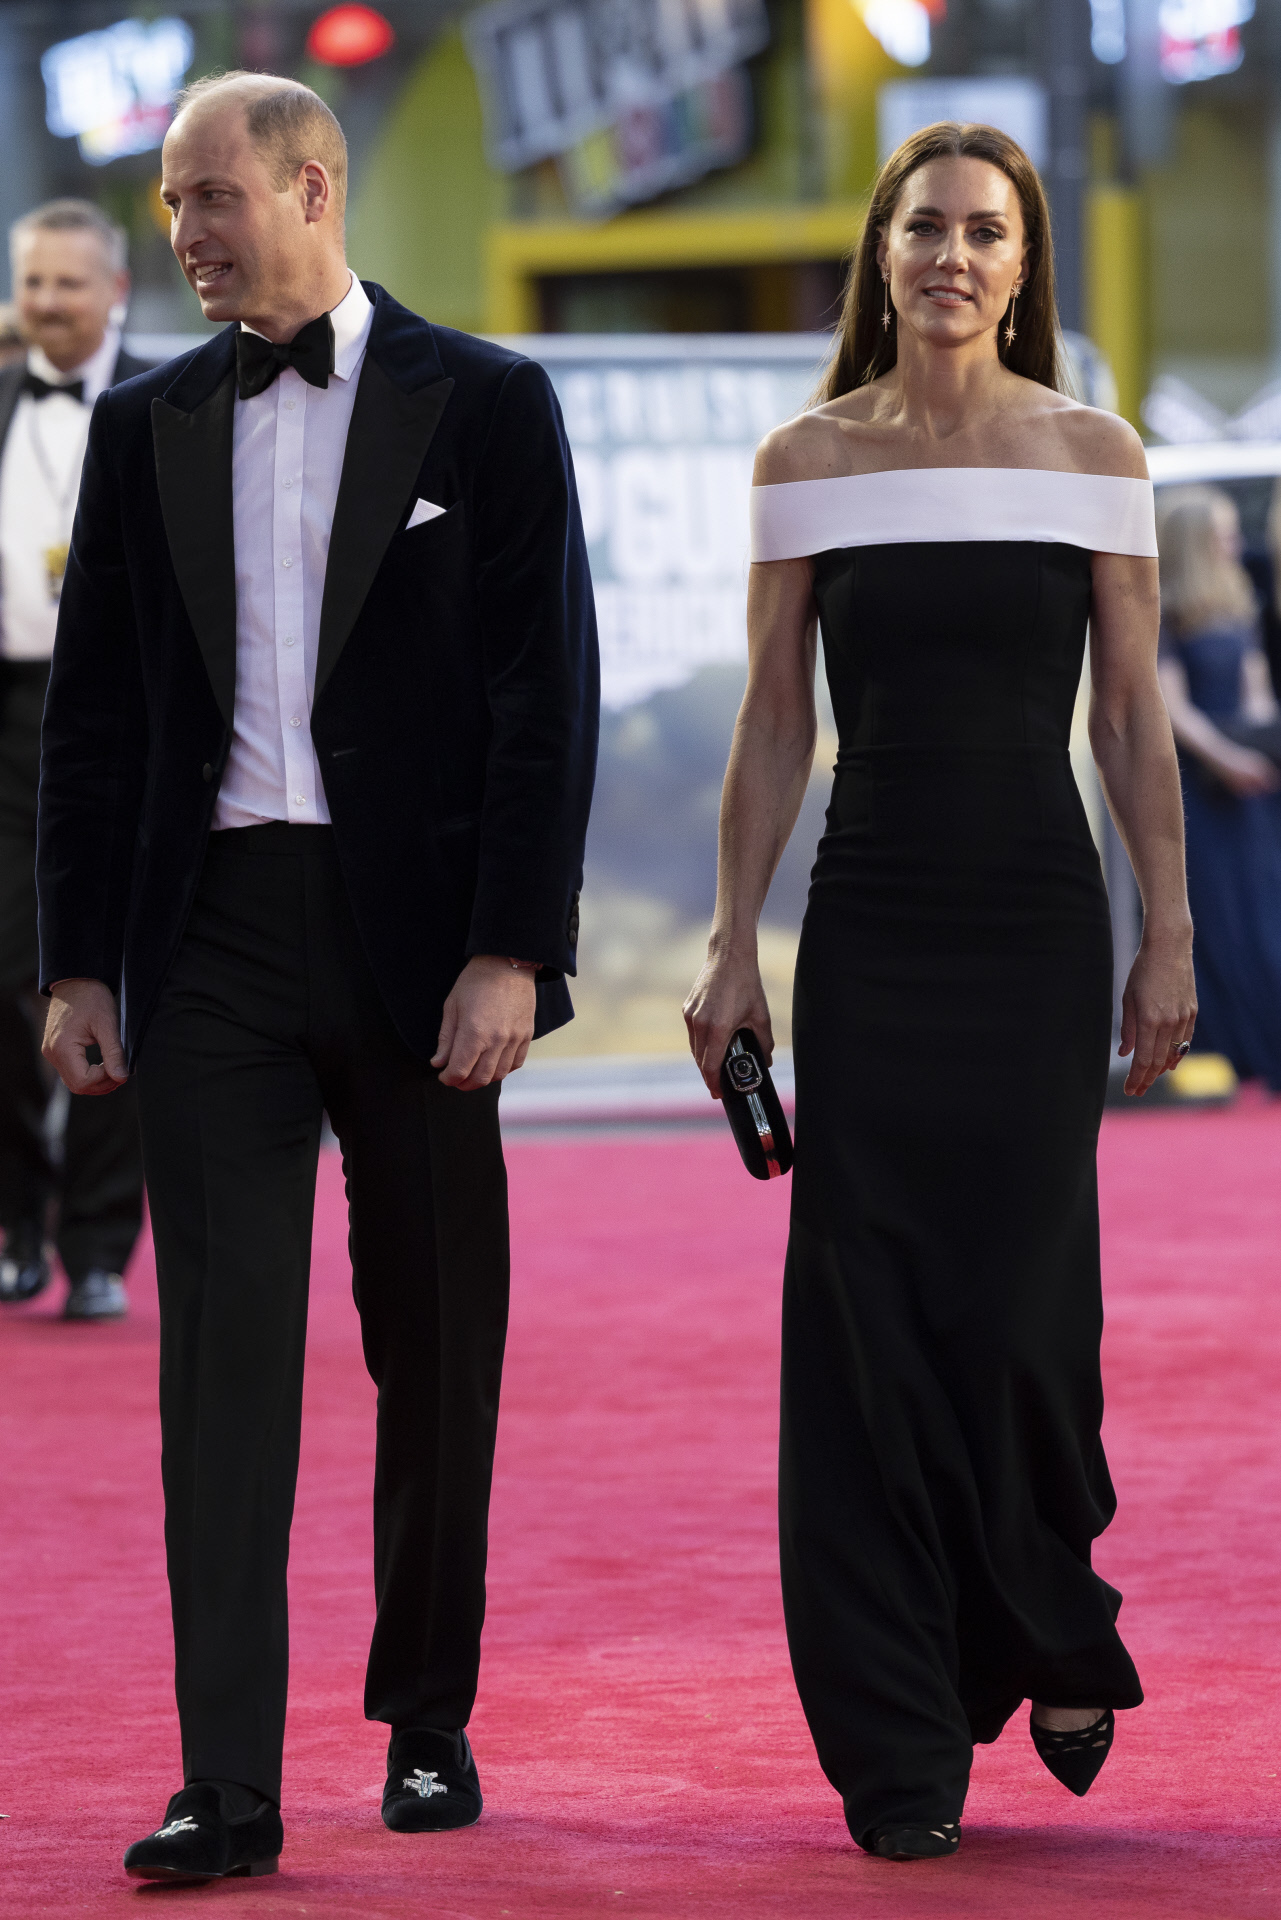 El impresionante vestido de Kate Middleton para pasear por la alfombra roja  con Tom Cruise 